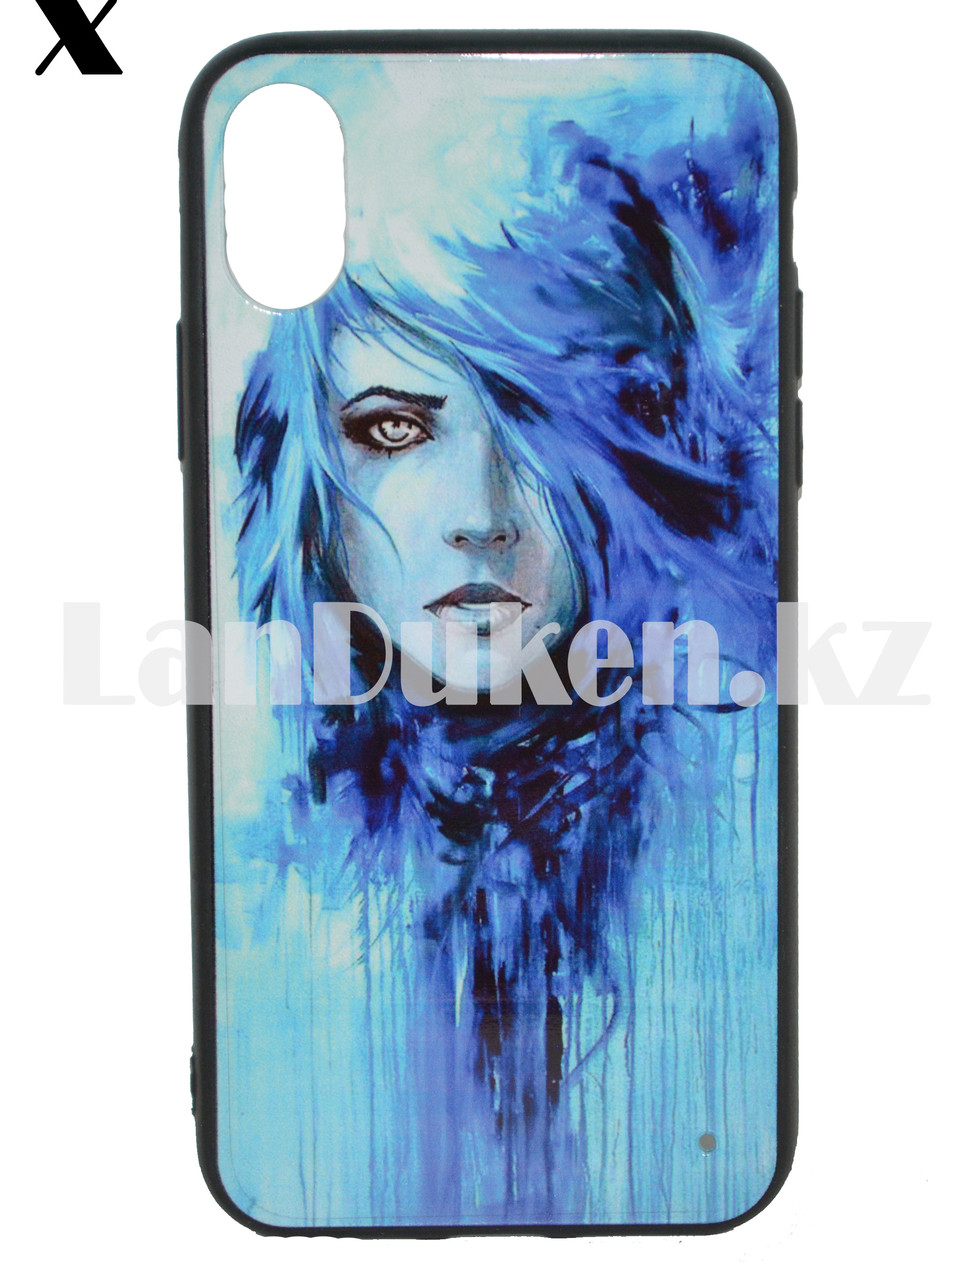 Чехол на iPhone X (Apple iPhone X) принт девушка с синими волосами, фото 1